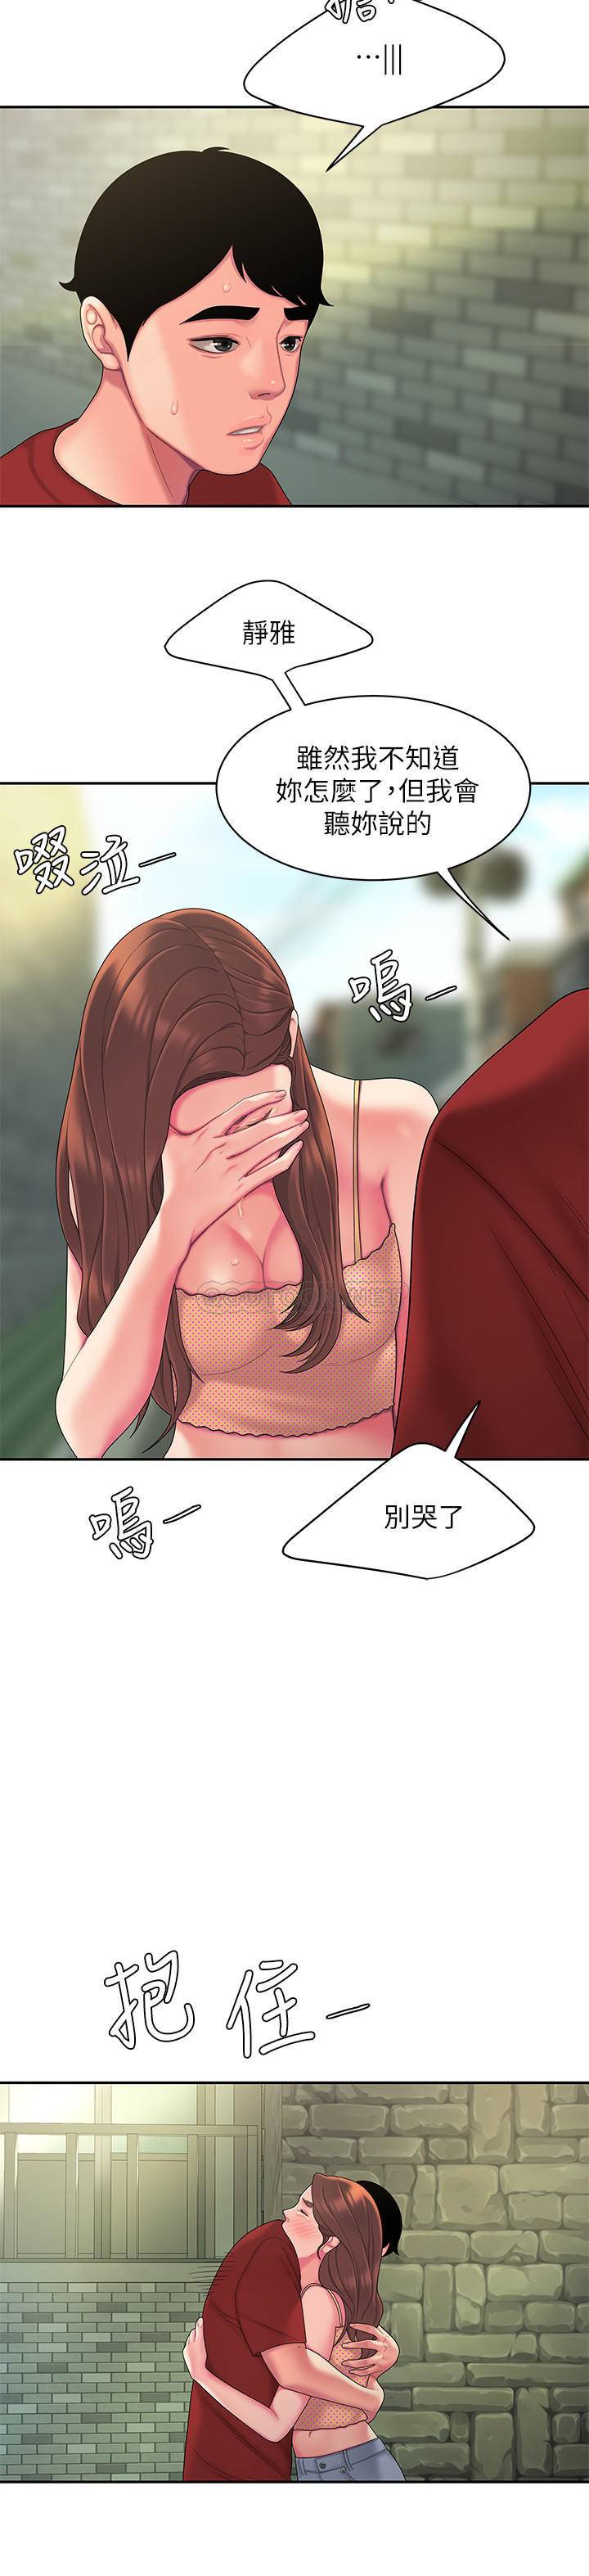 韩国污漫画 幸福外送員 第46话 20